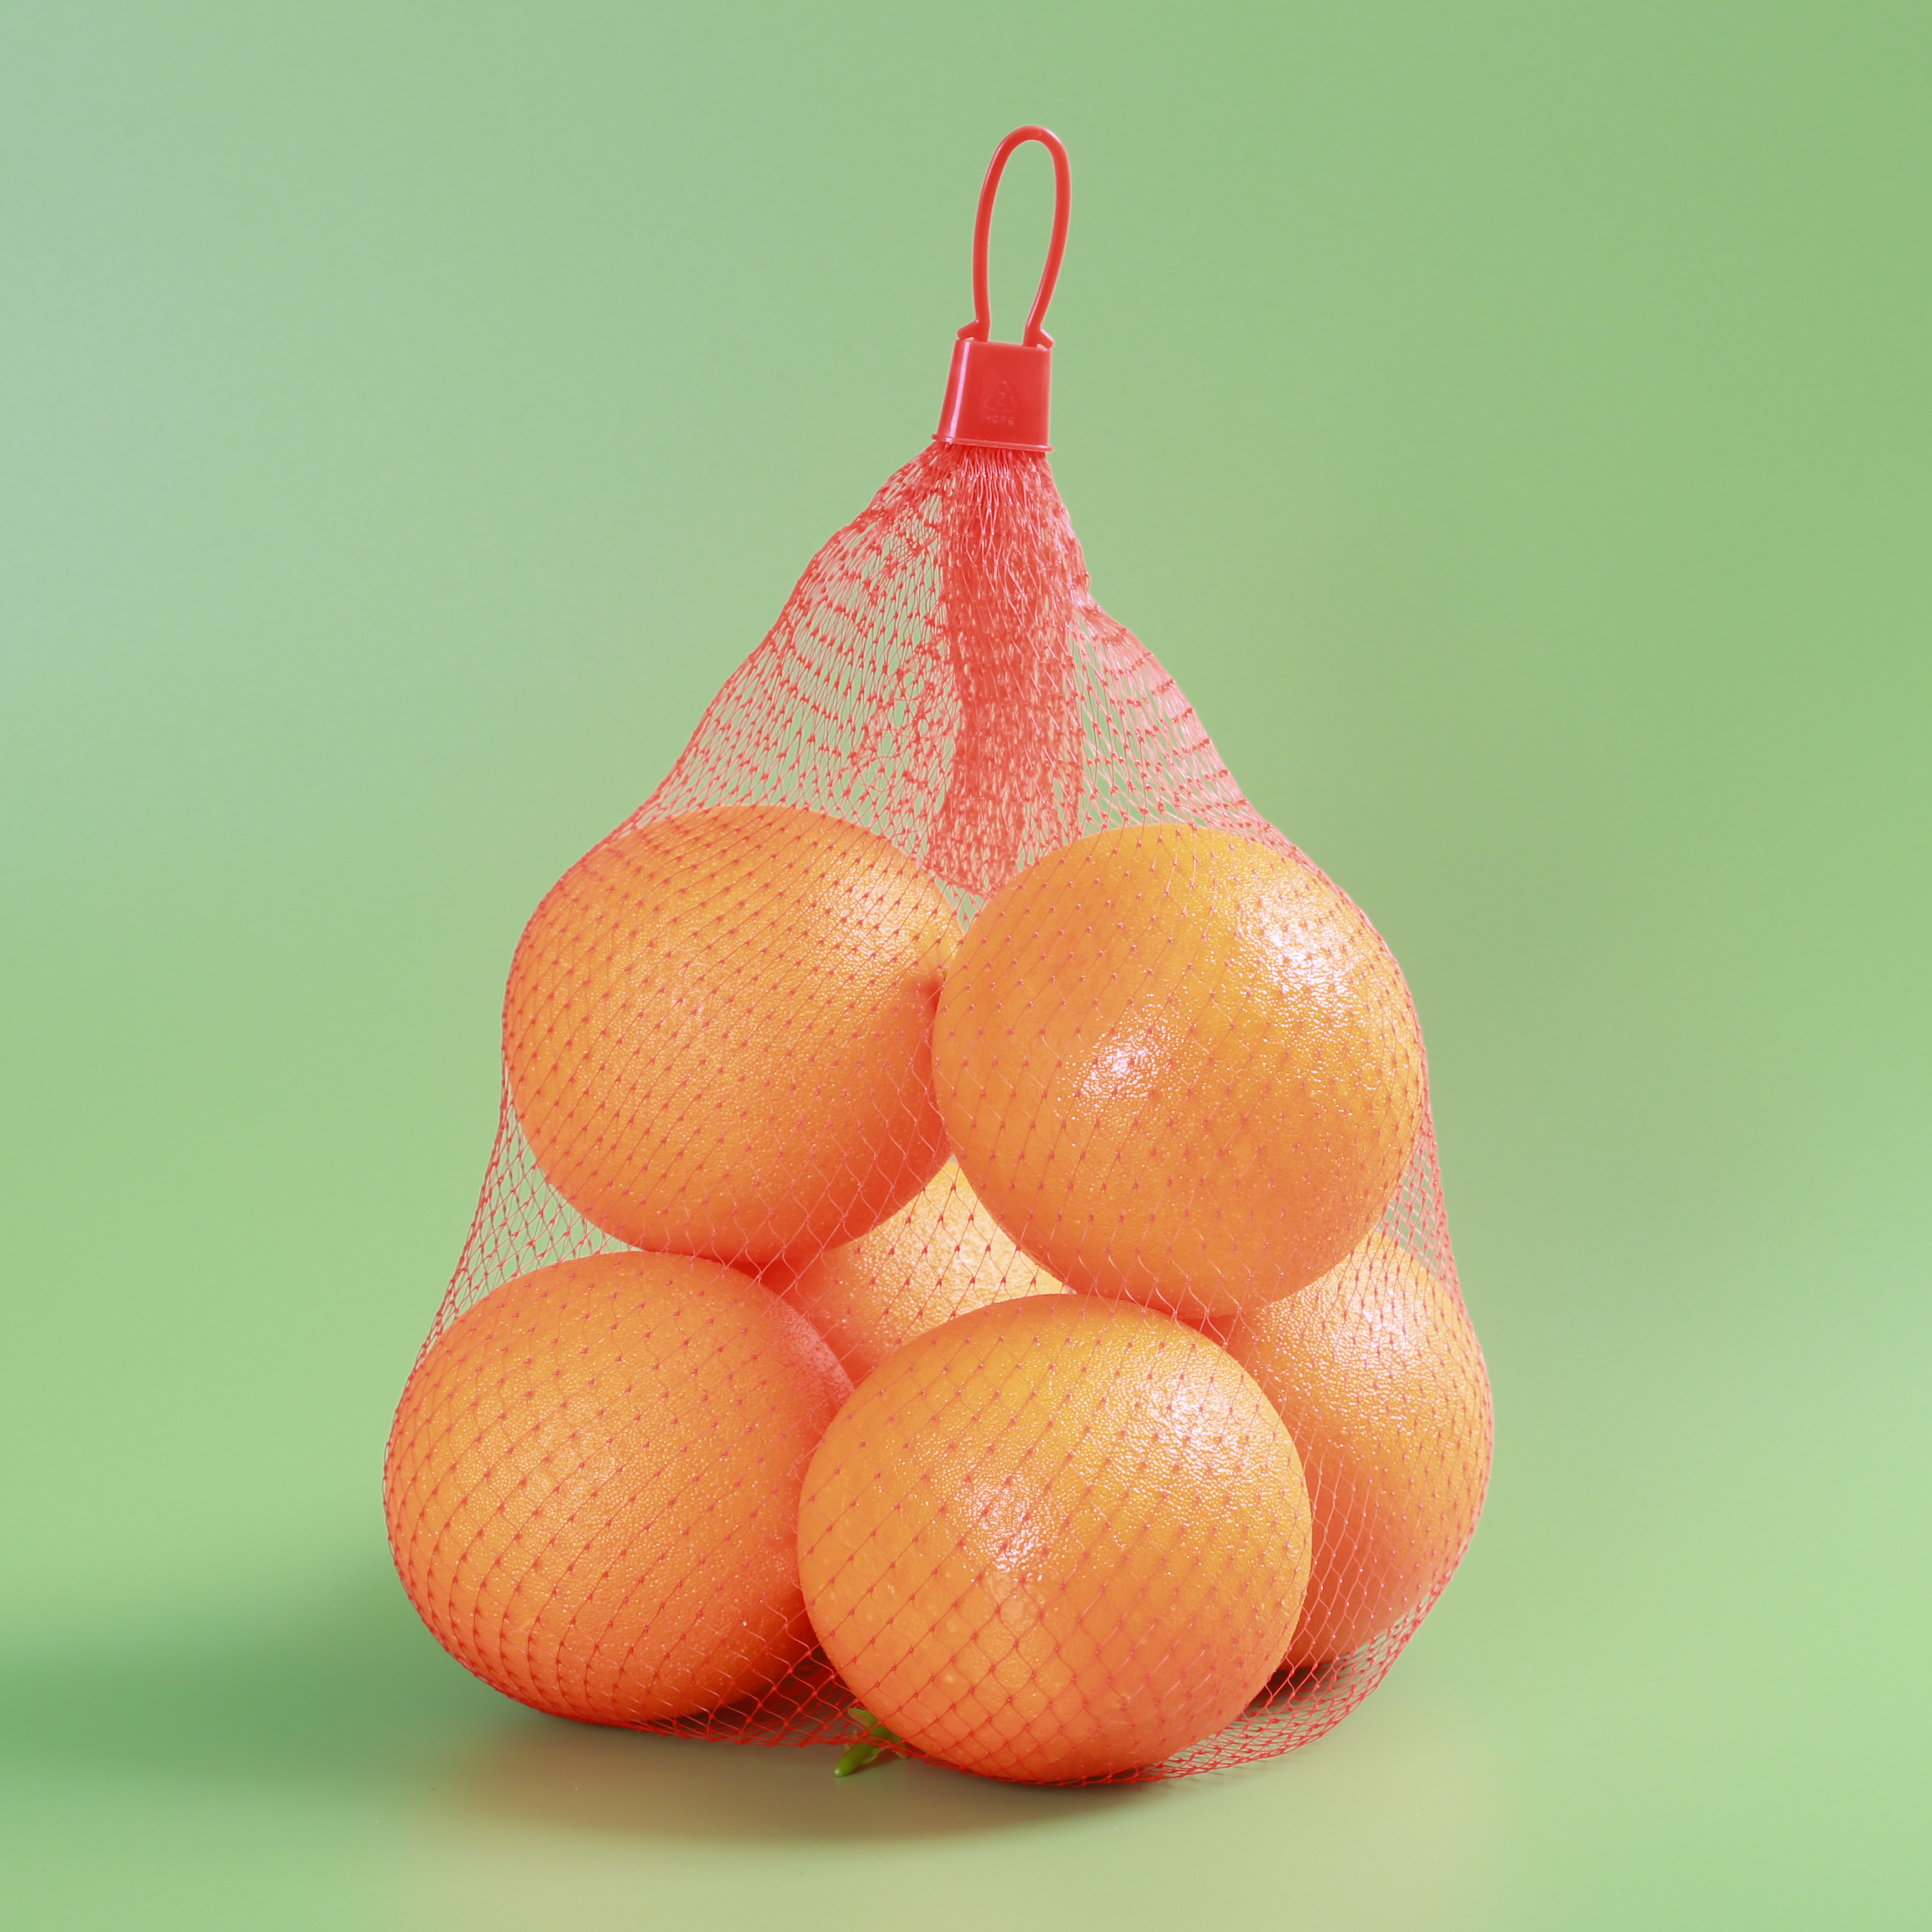 ロール包装ニンニクタマネギフルーツ卵管状メッシュスリーブバッグの押し出されたメッシュプラスチックネットバッグ